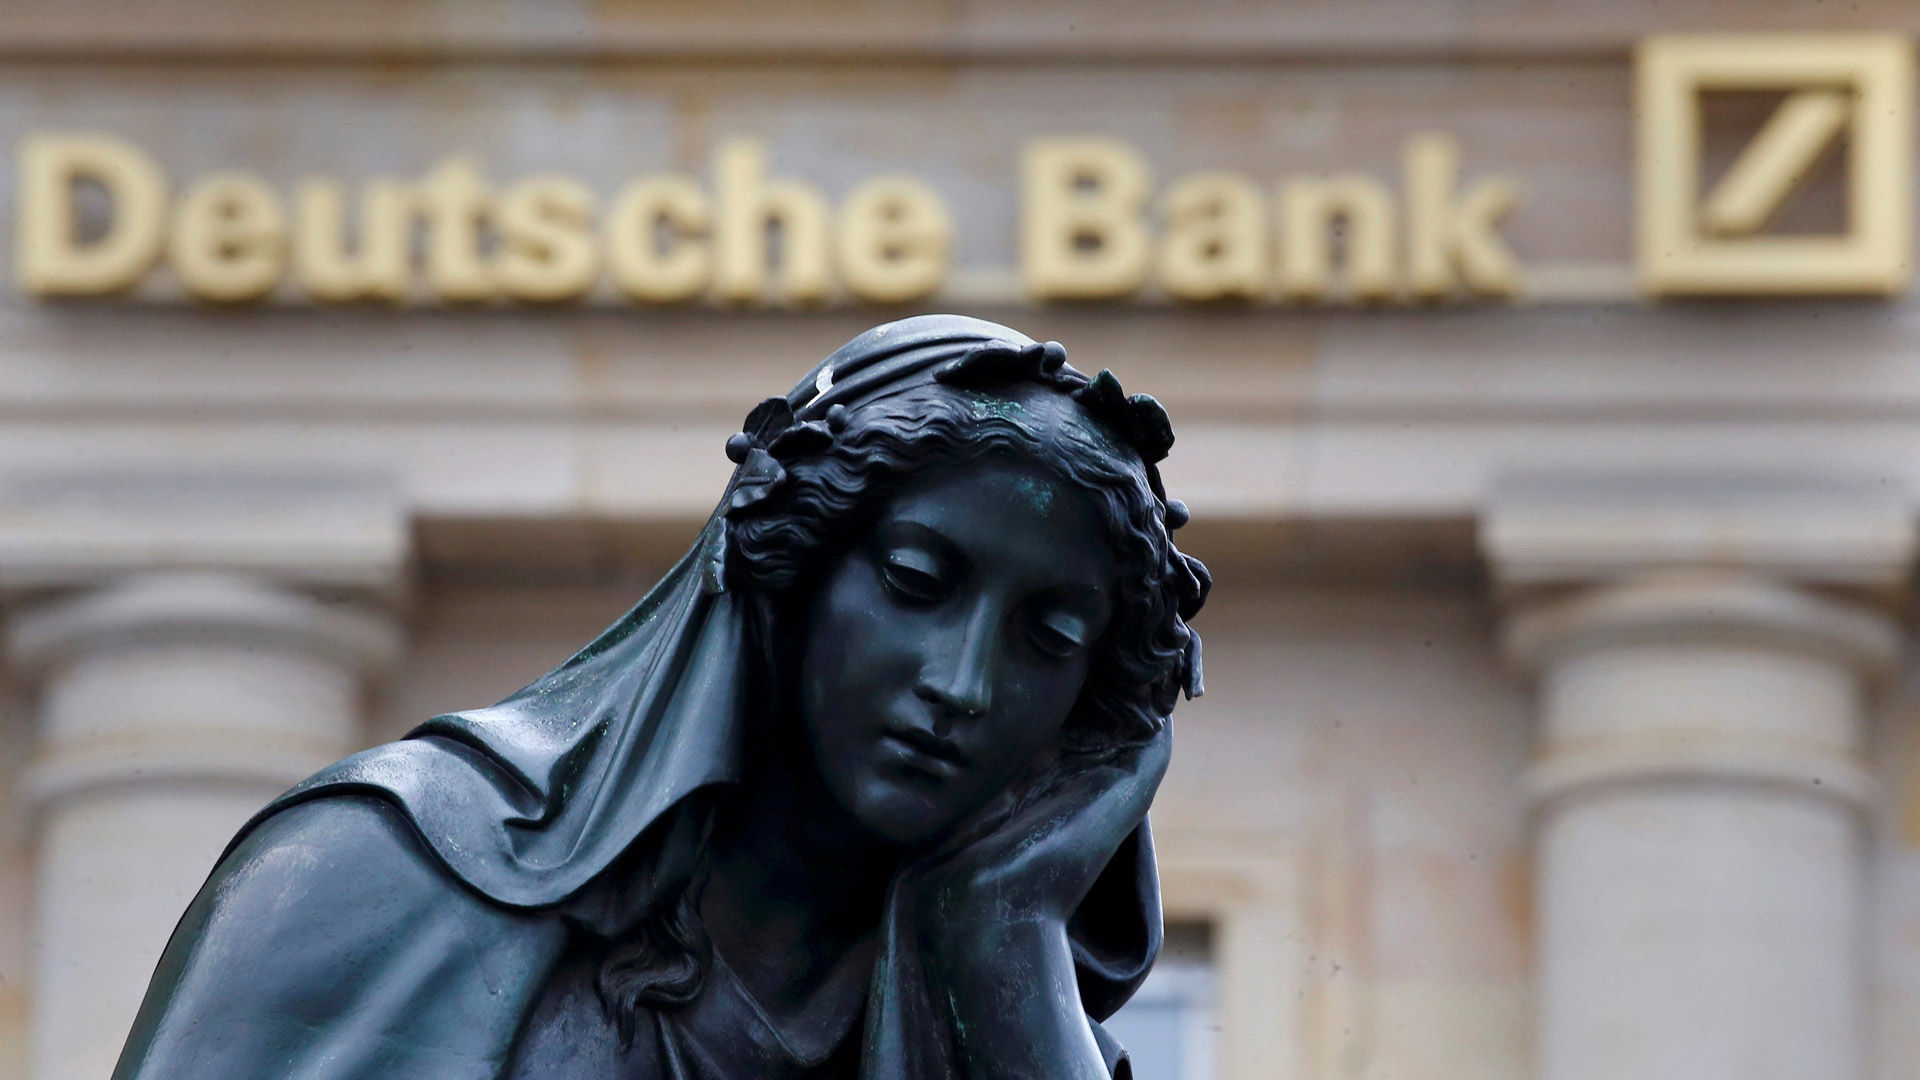 deutsche bank проблемы